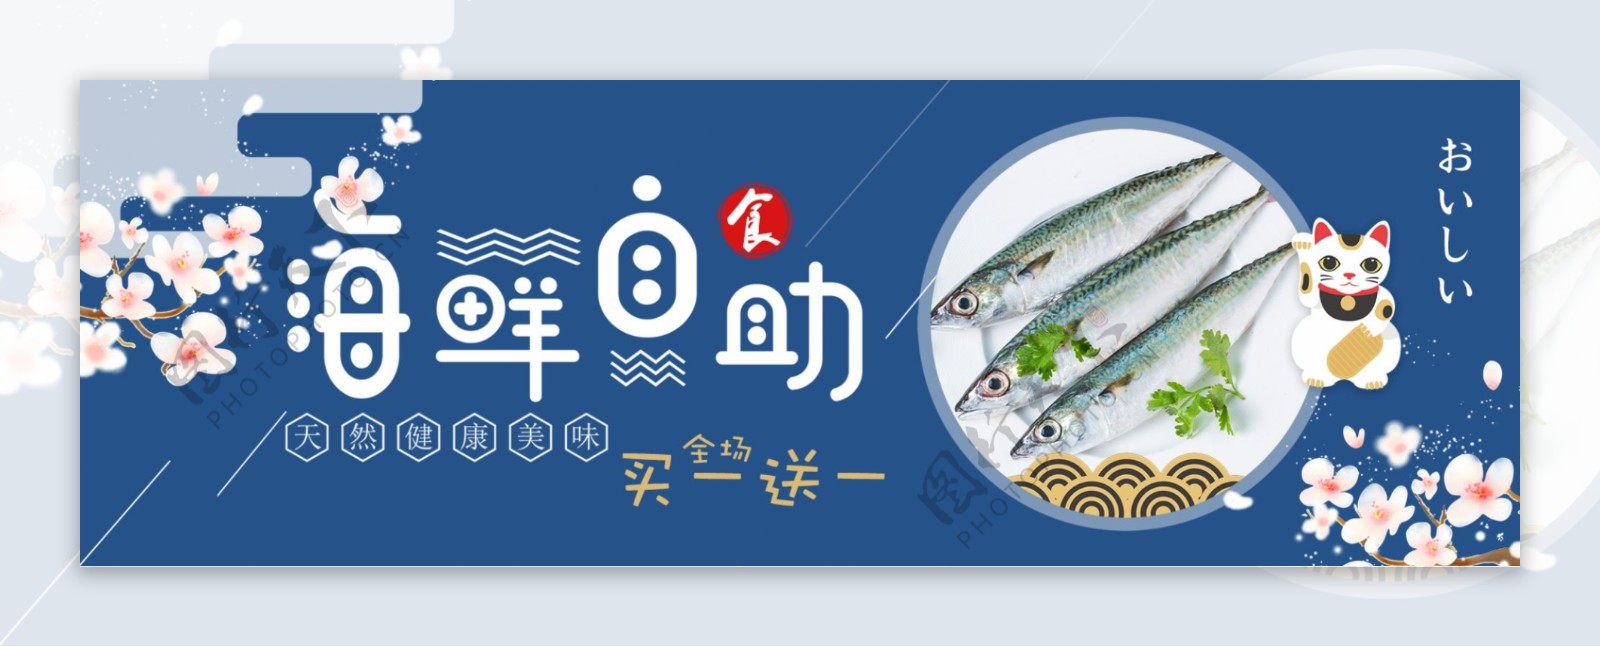 蓝色日系樱花海鲜开渔节电商banner淘宝海报